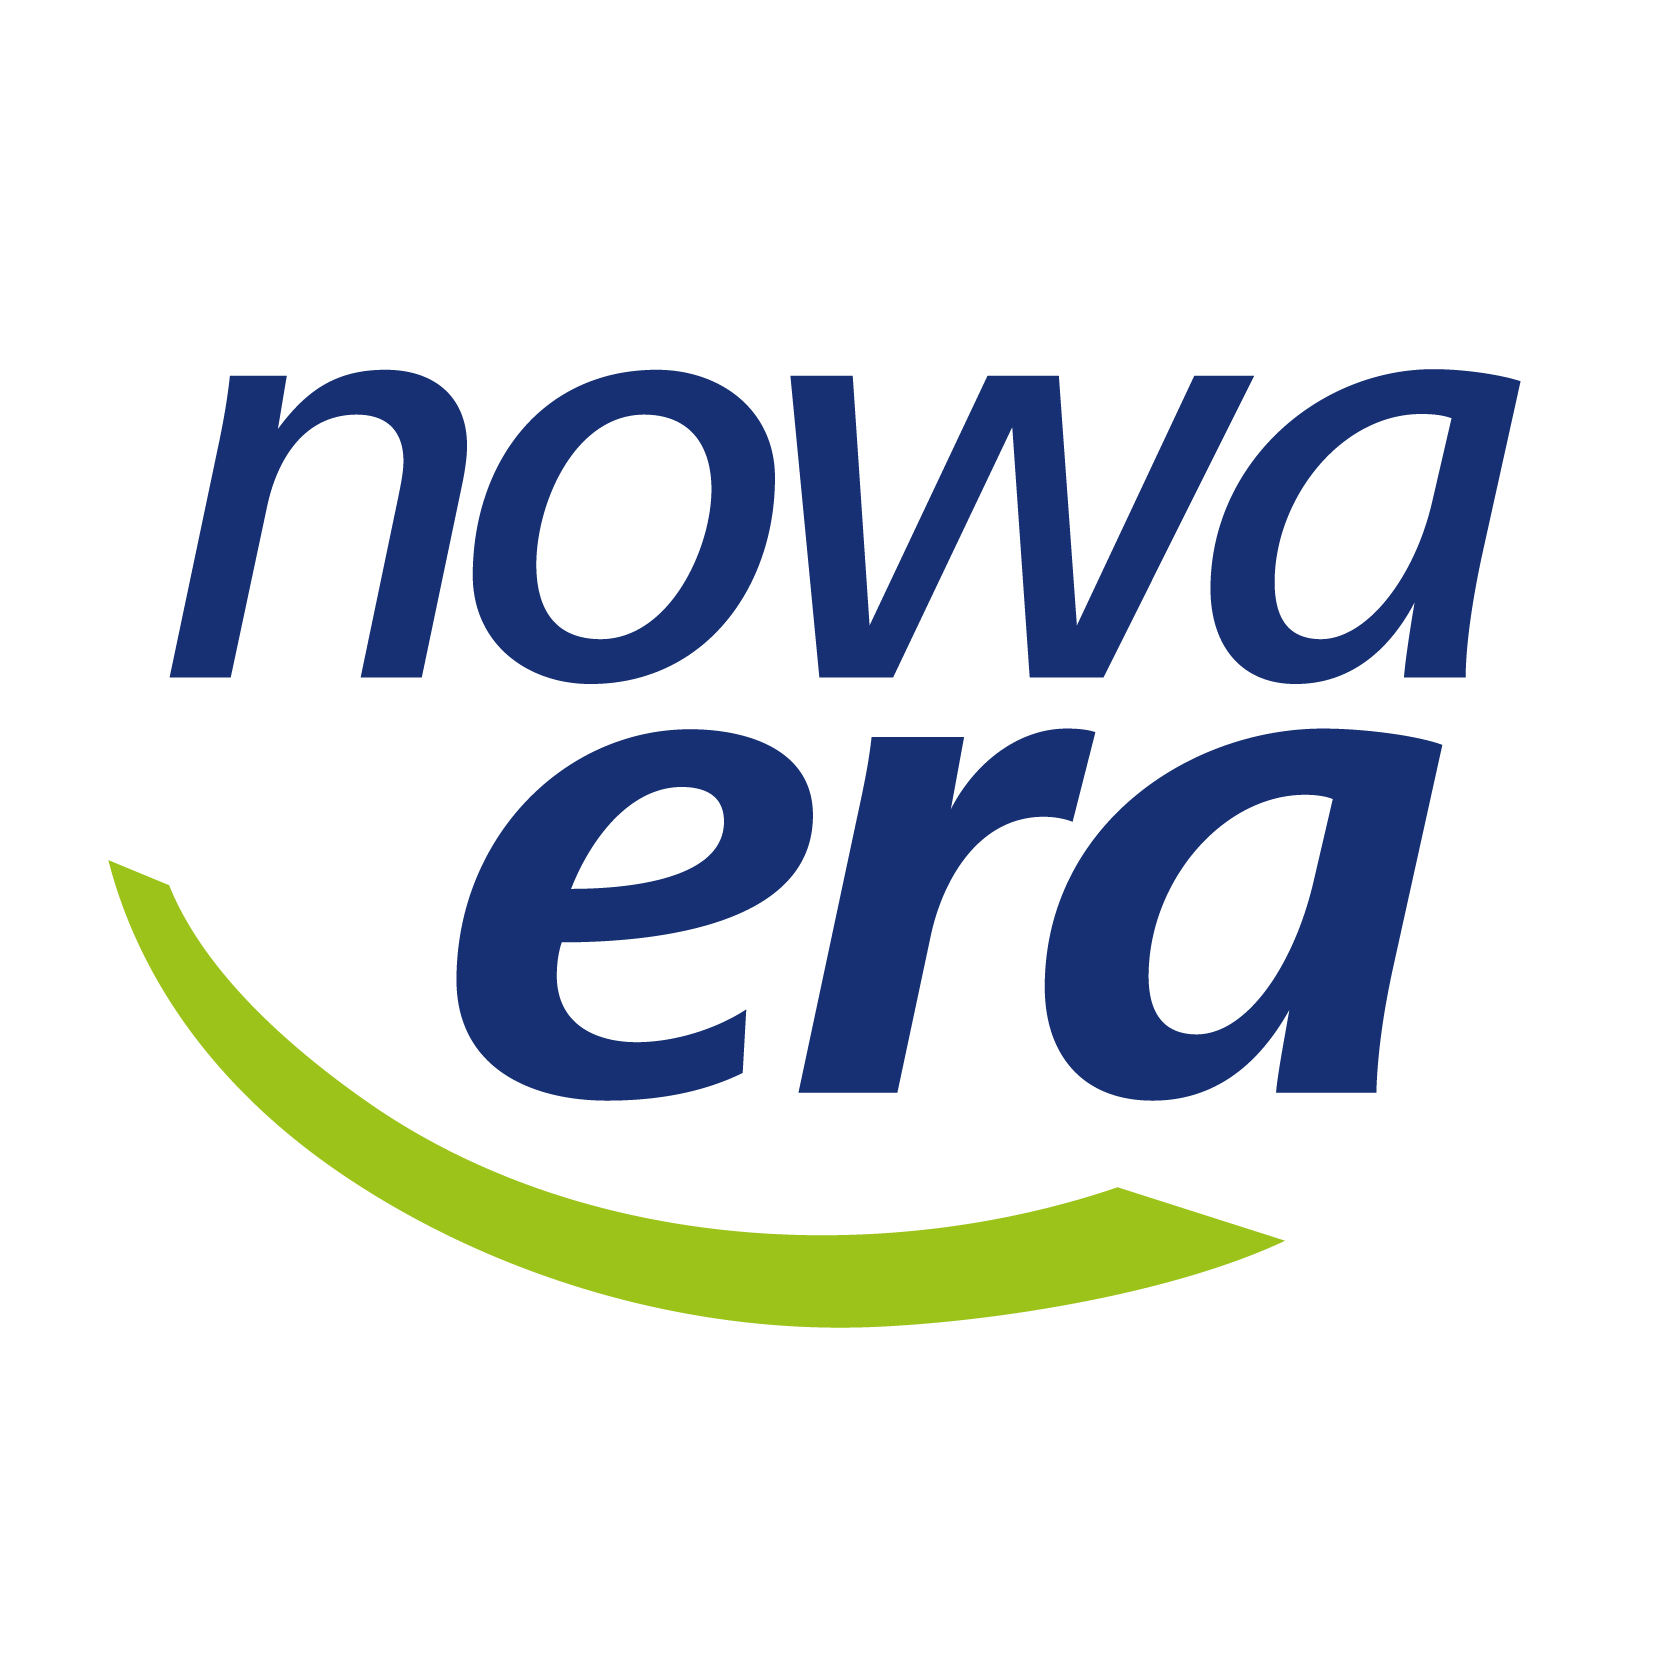 Logo Nowa Era